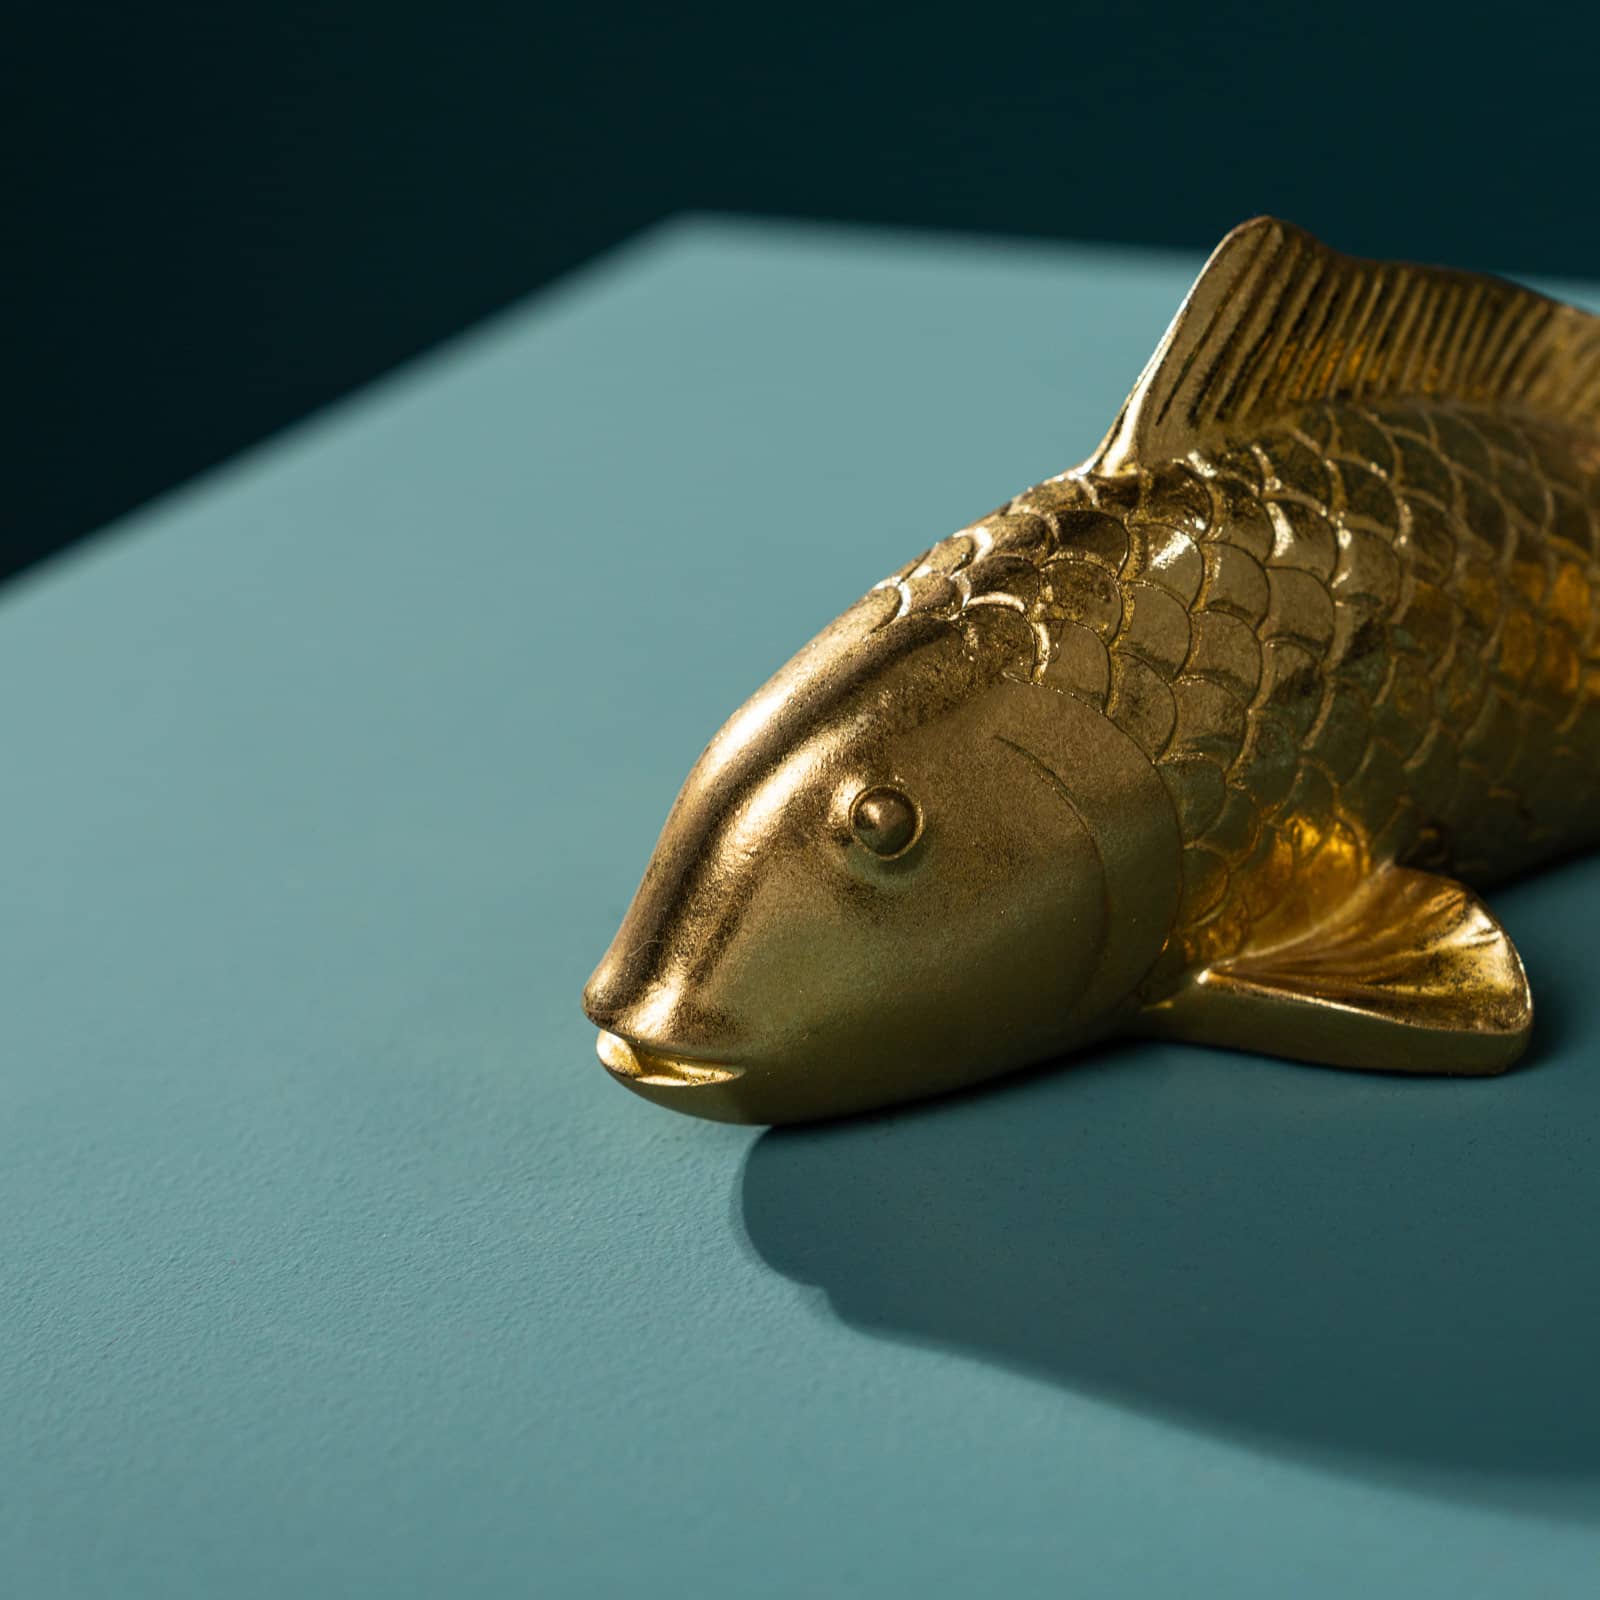 Decoratiefiguur vis, goud, polyresin, 24x9,5x9,5 cm, ook als wandobject te gebruiken